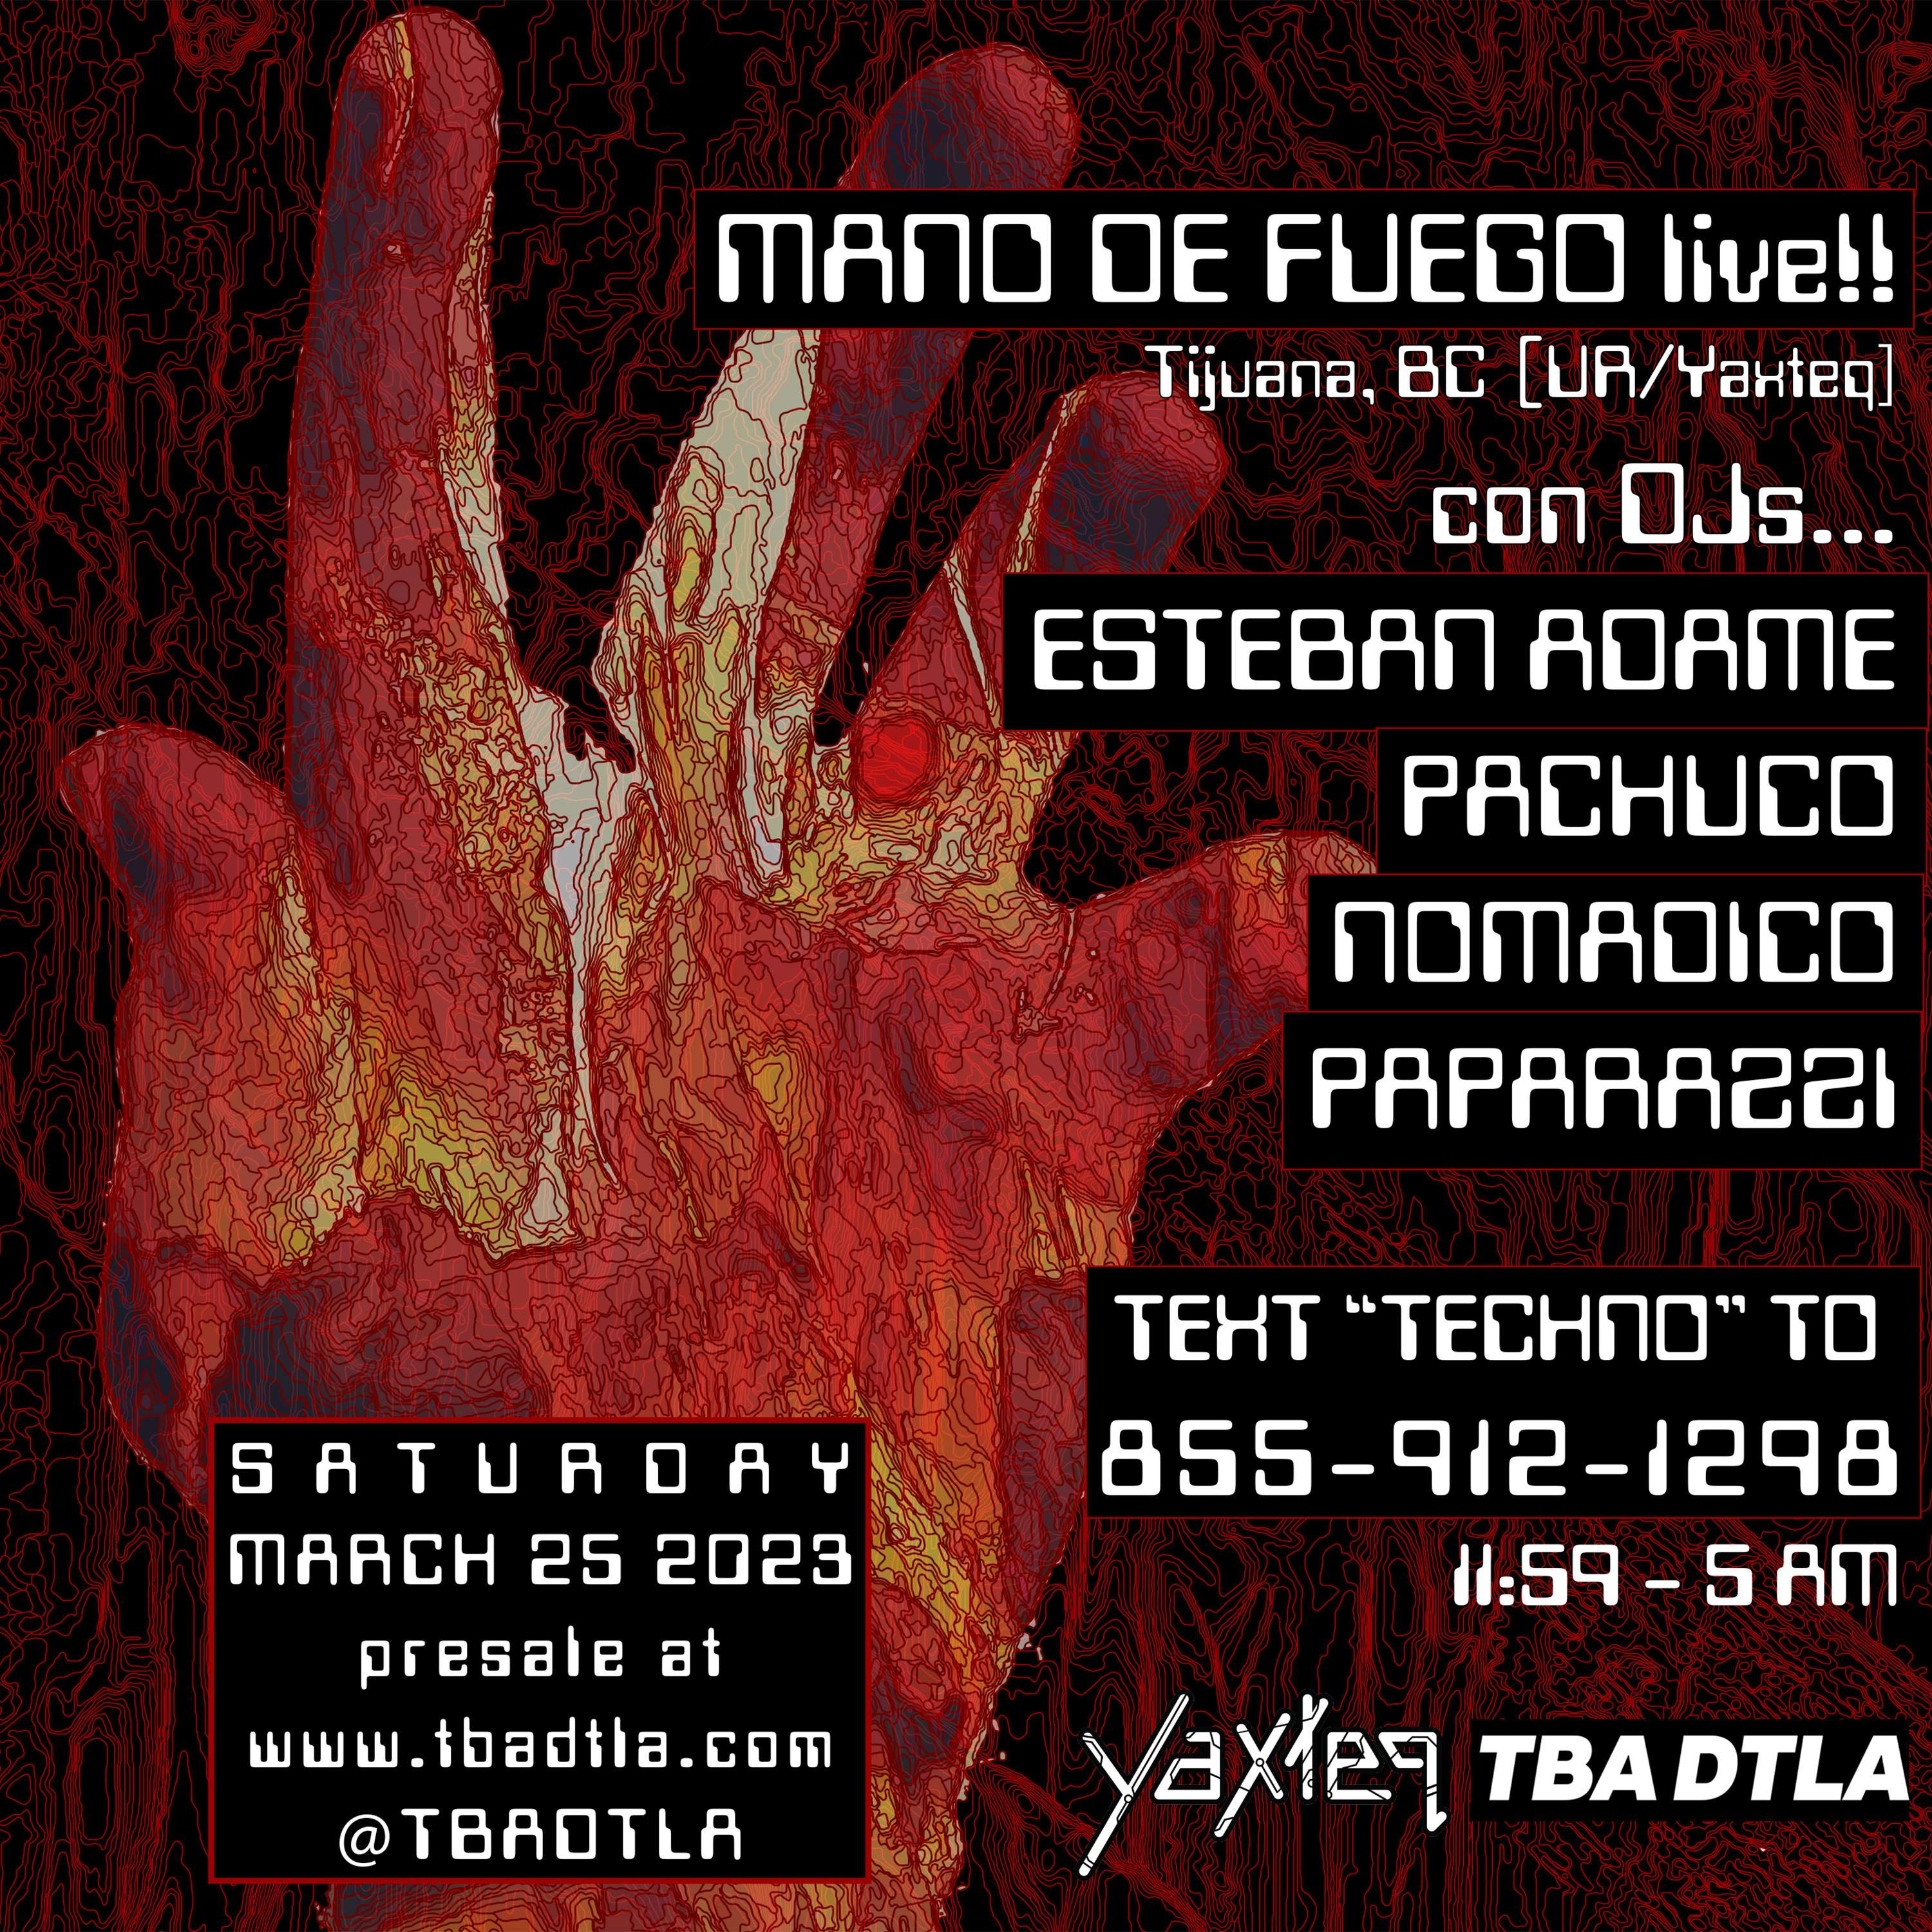 YAXTEQ PRESENTS: Mano de Fuego LIVE (UR / YAXTEQ), Esteban Adame, PACHUCO, Nomadico - フライヤー表